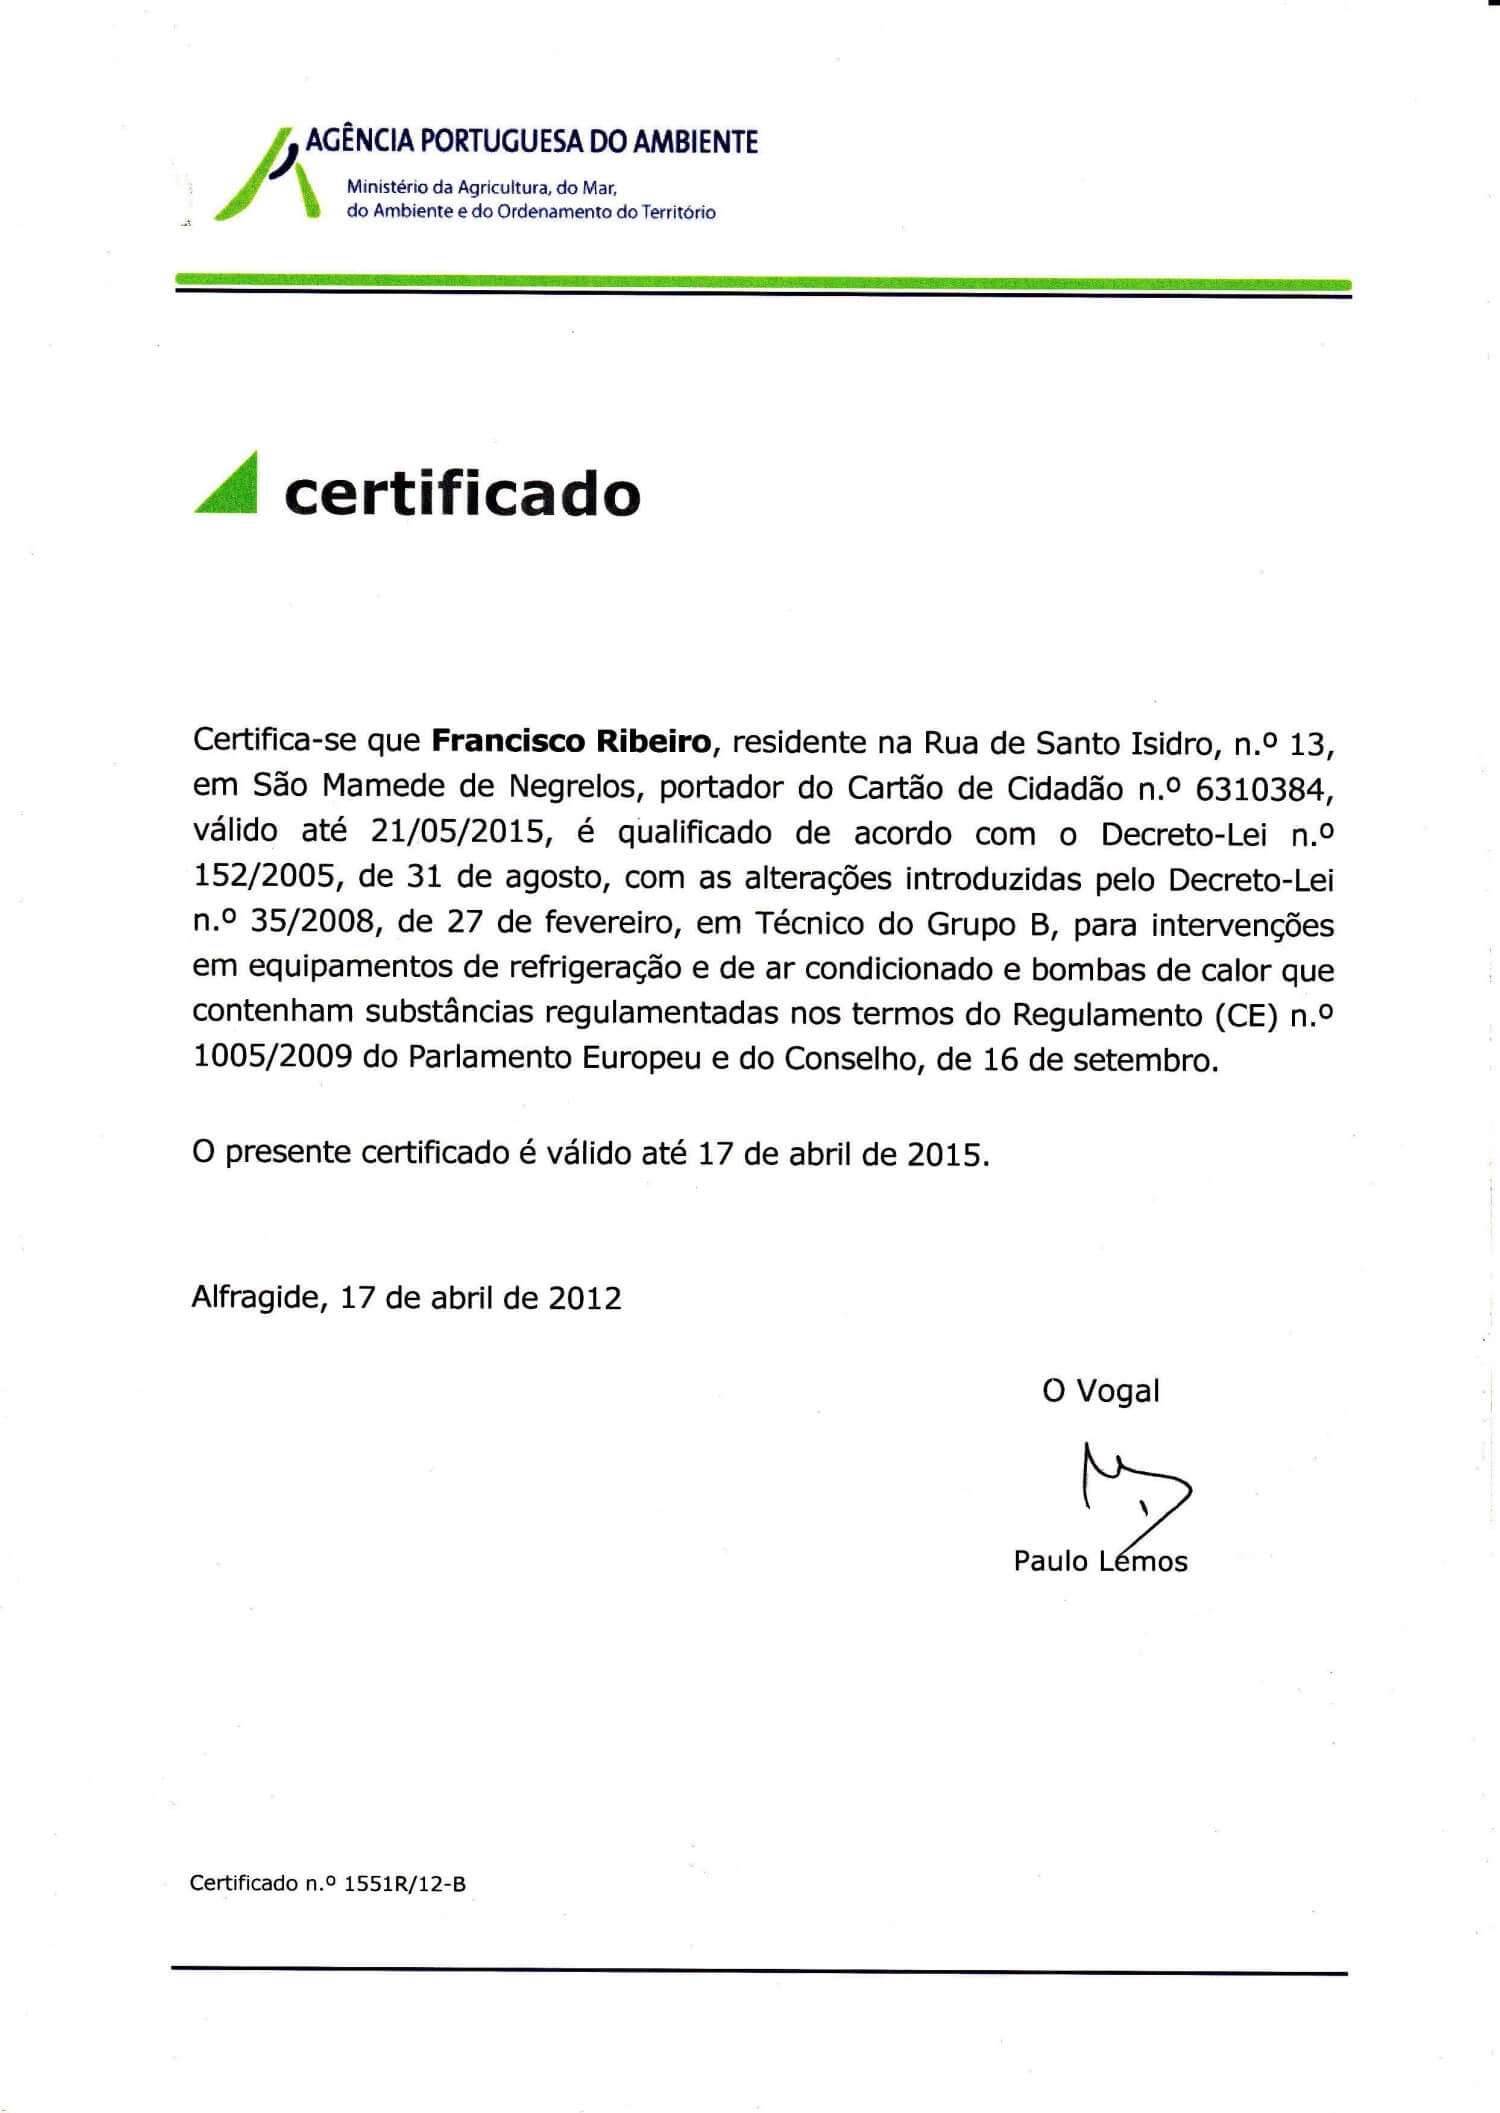 Certificado tecnico grupo B 2015